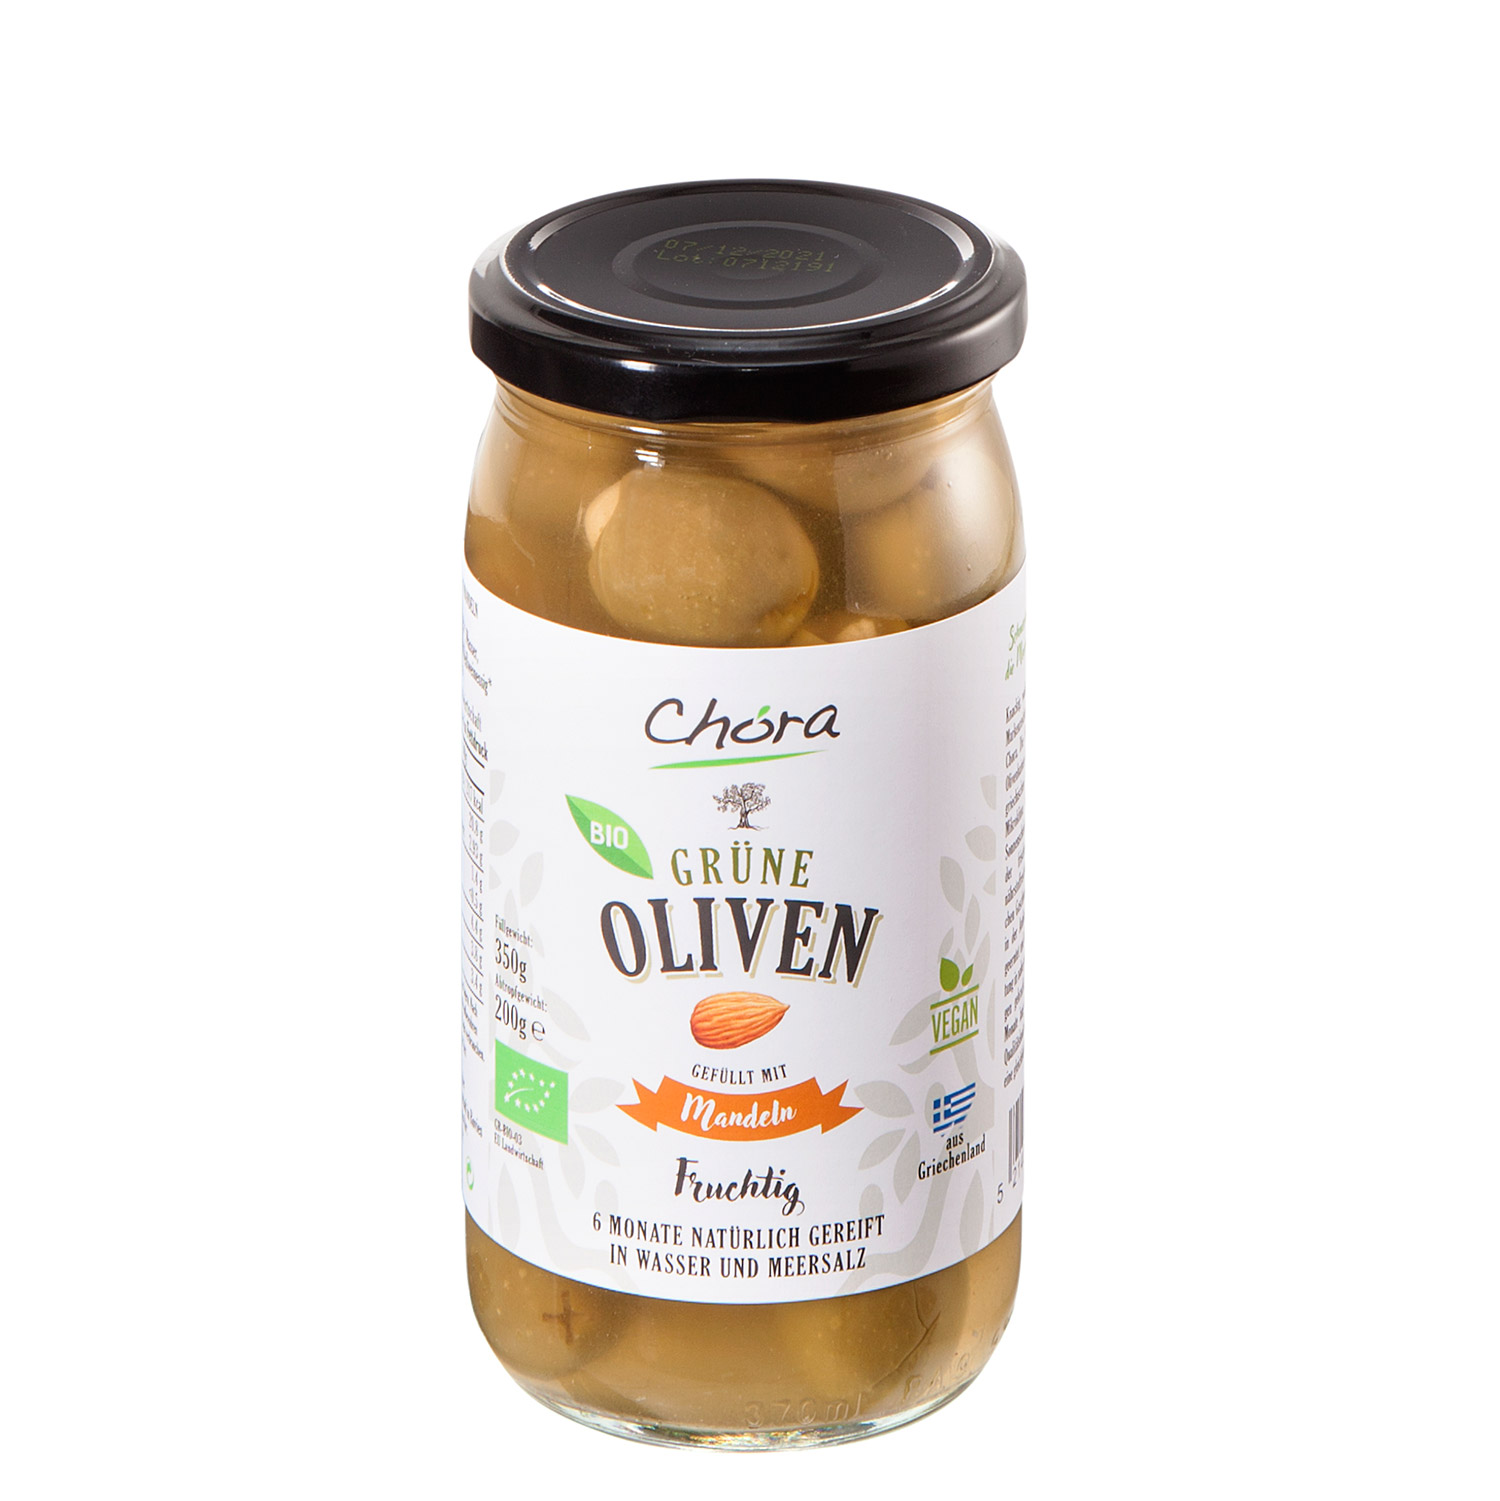 Bio-Oliven gefüllt mit Mandeln